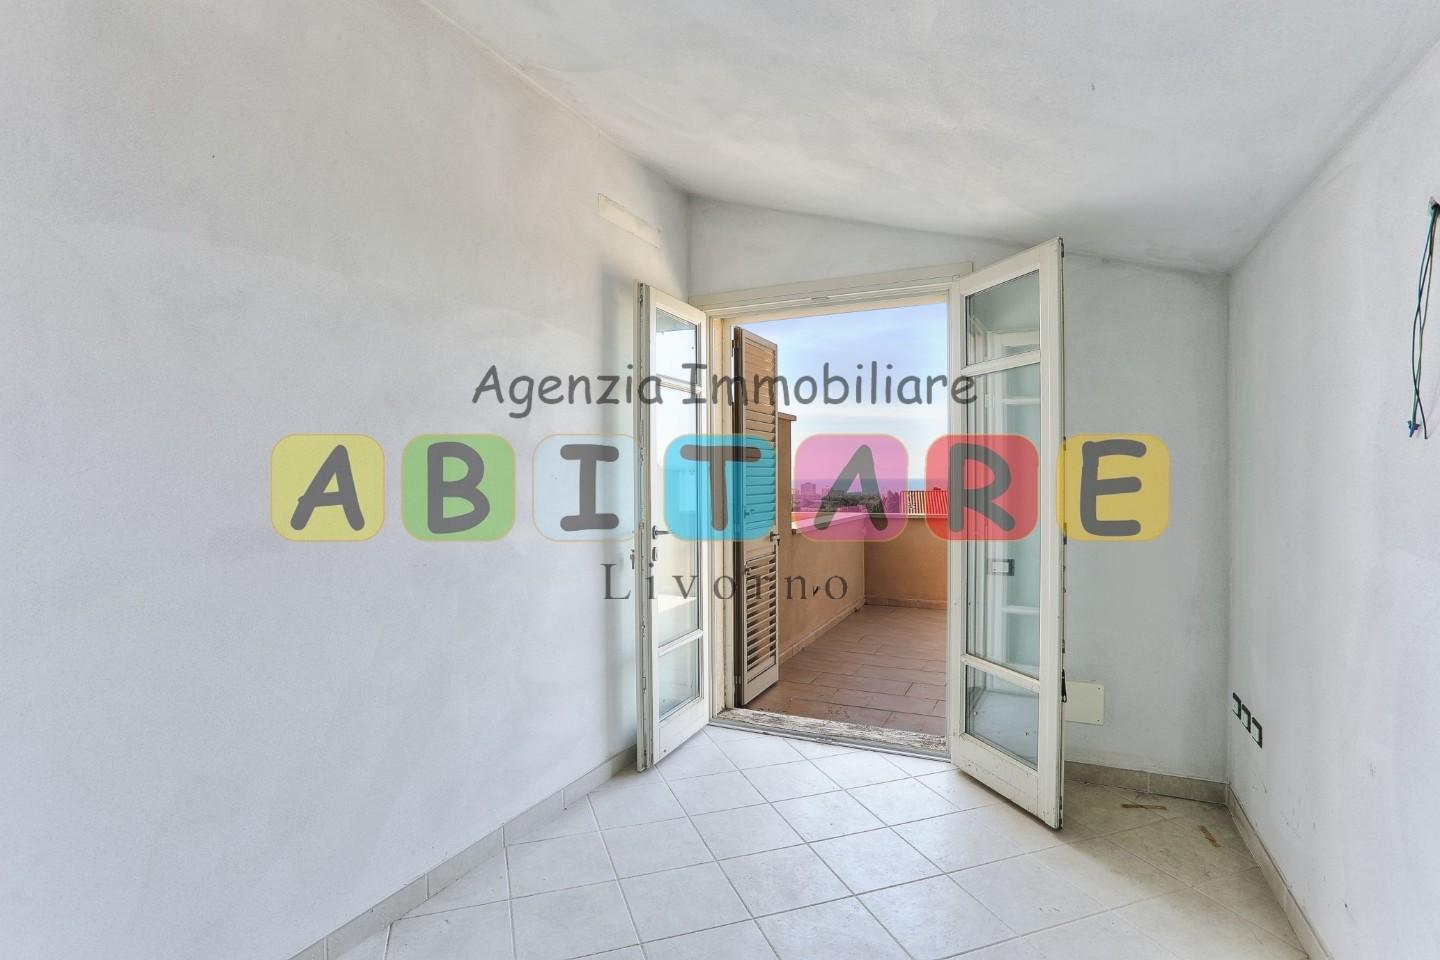 Appartamento in vendita - Castiglioncello, Rosignano Marittimo